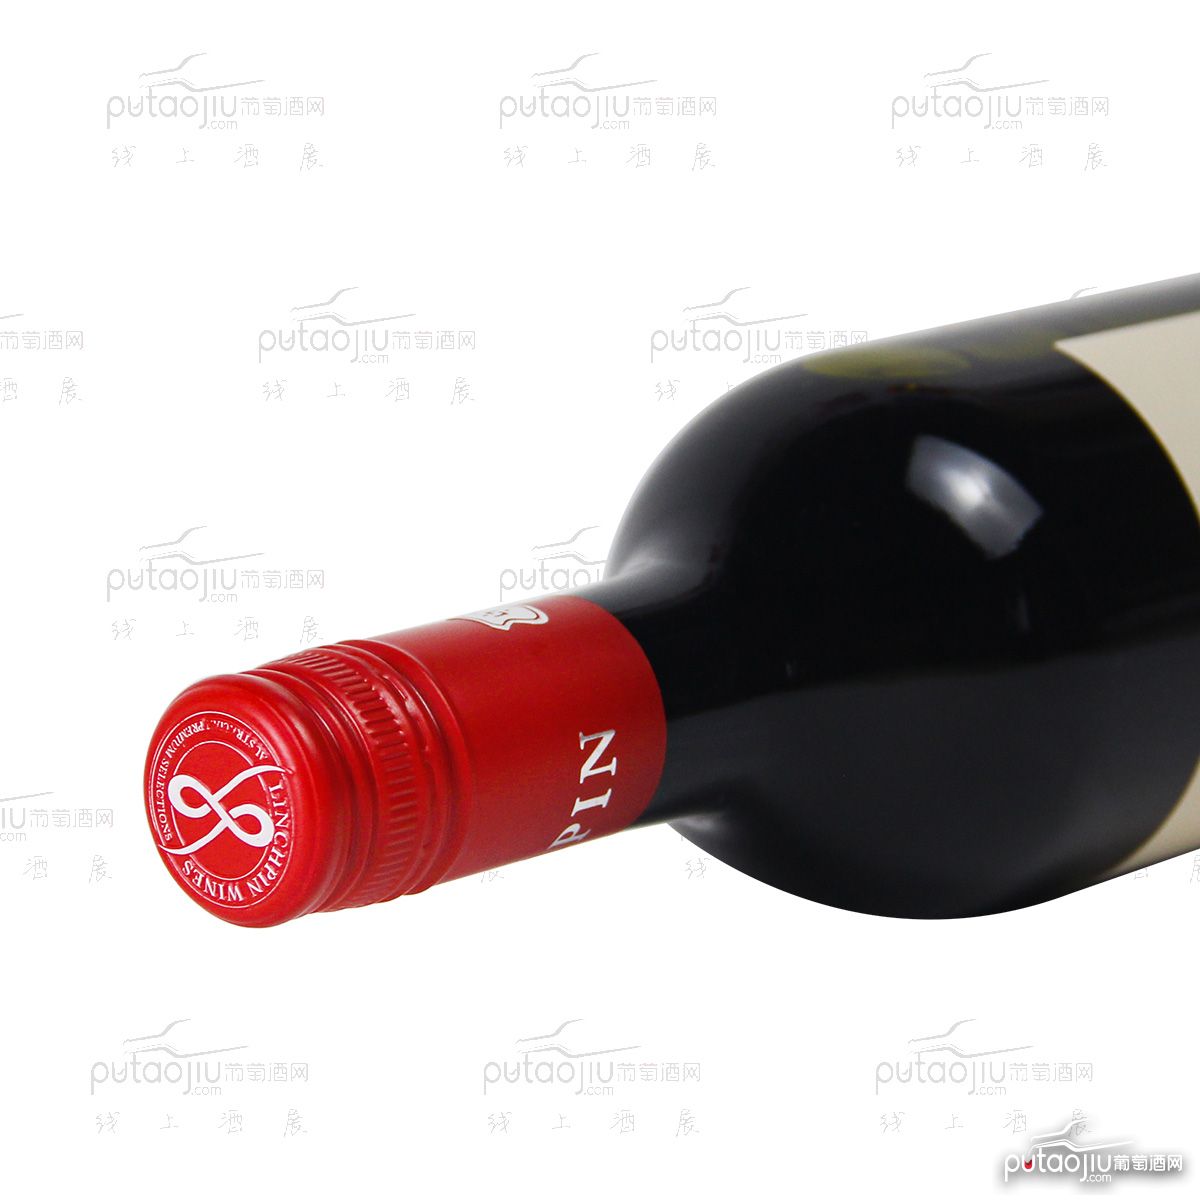 澳大利亚巴罗萨山谷西拉领宾原红干红葡萄酒红酒